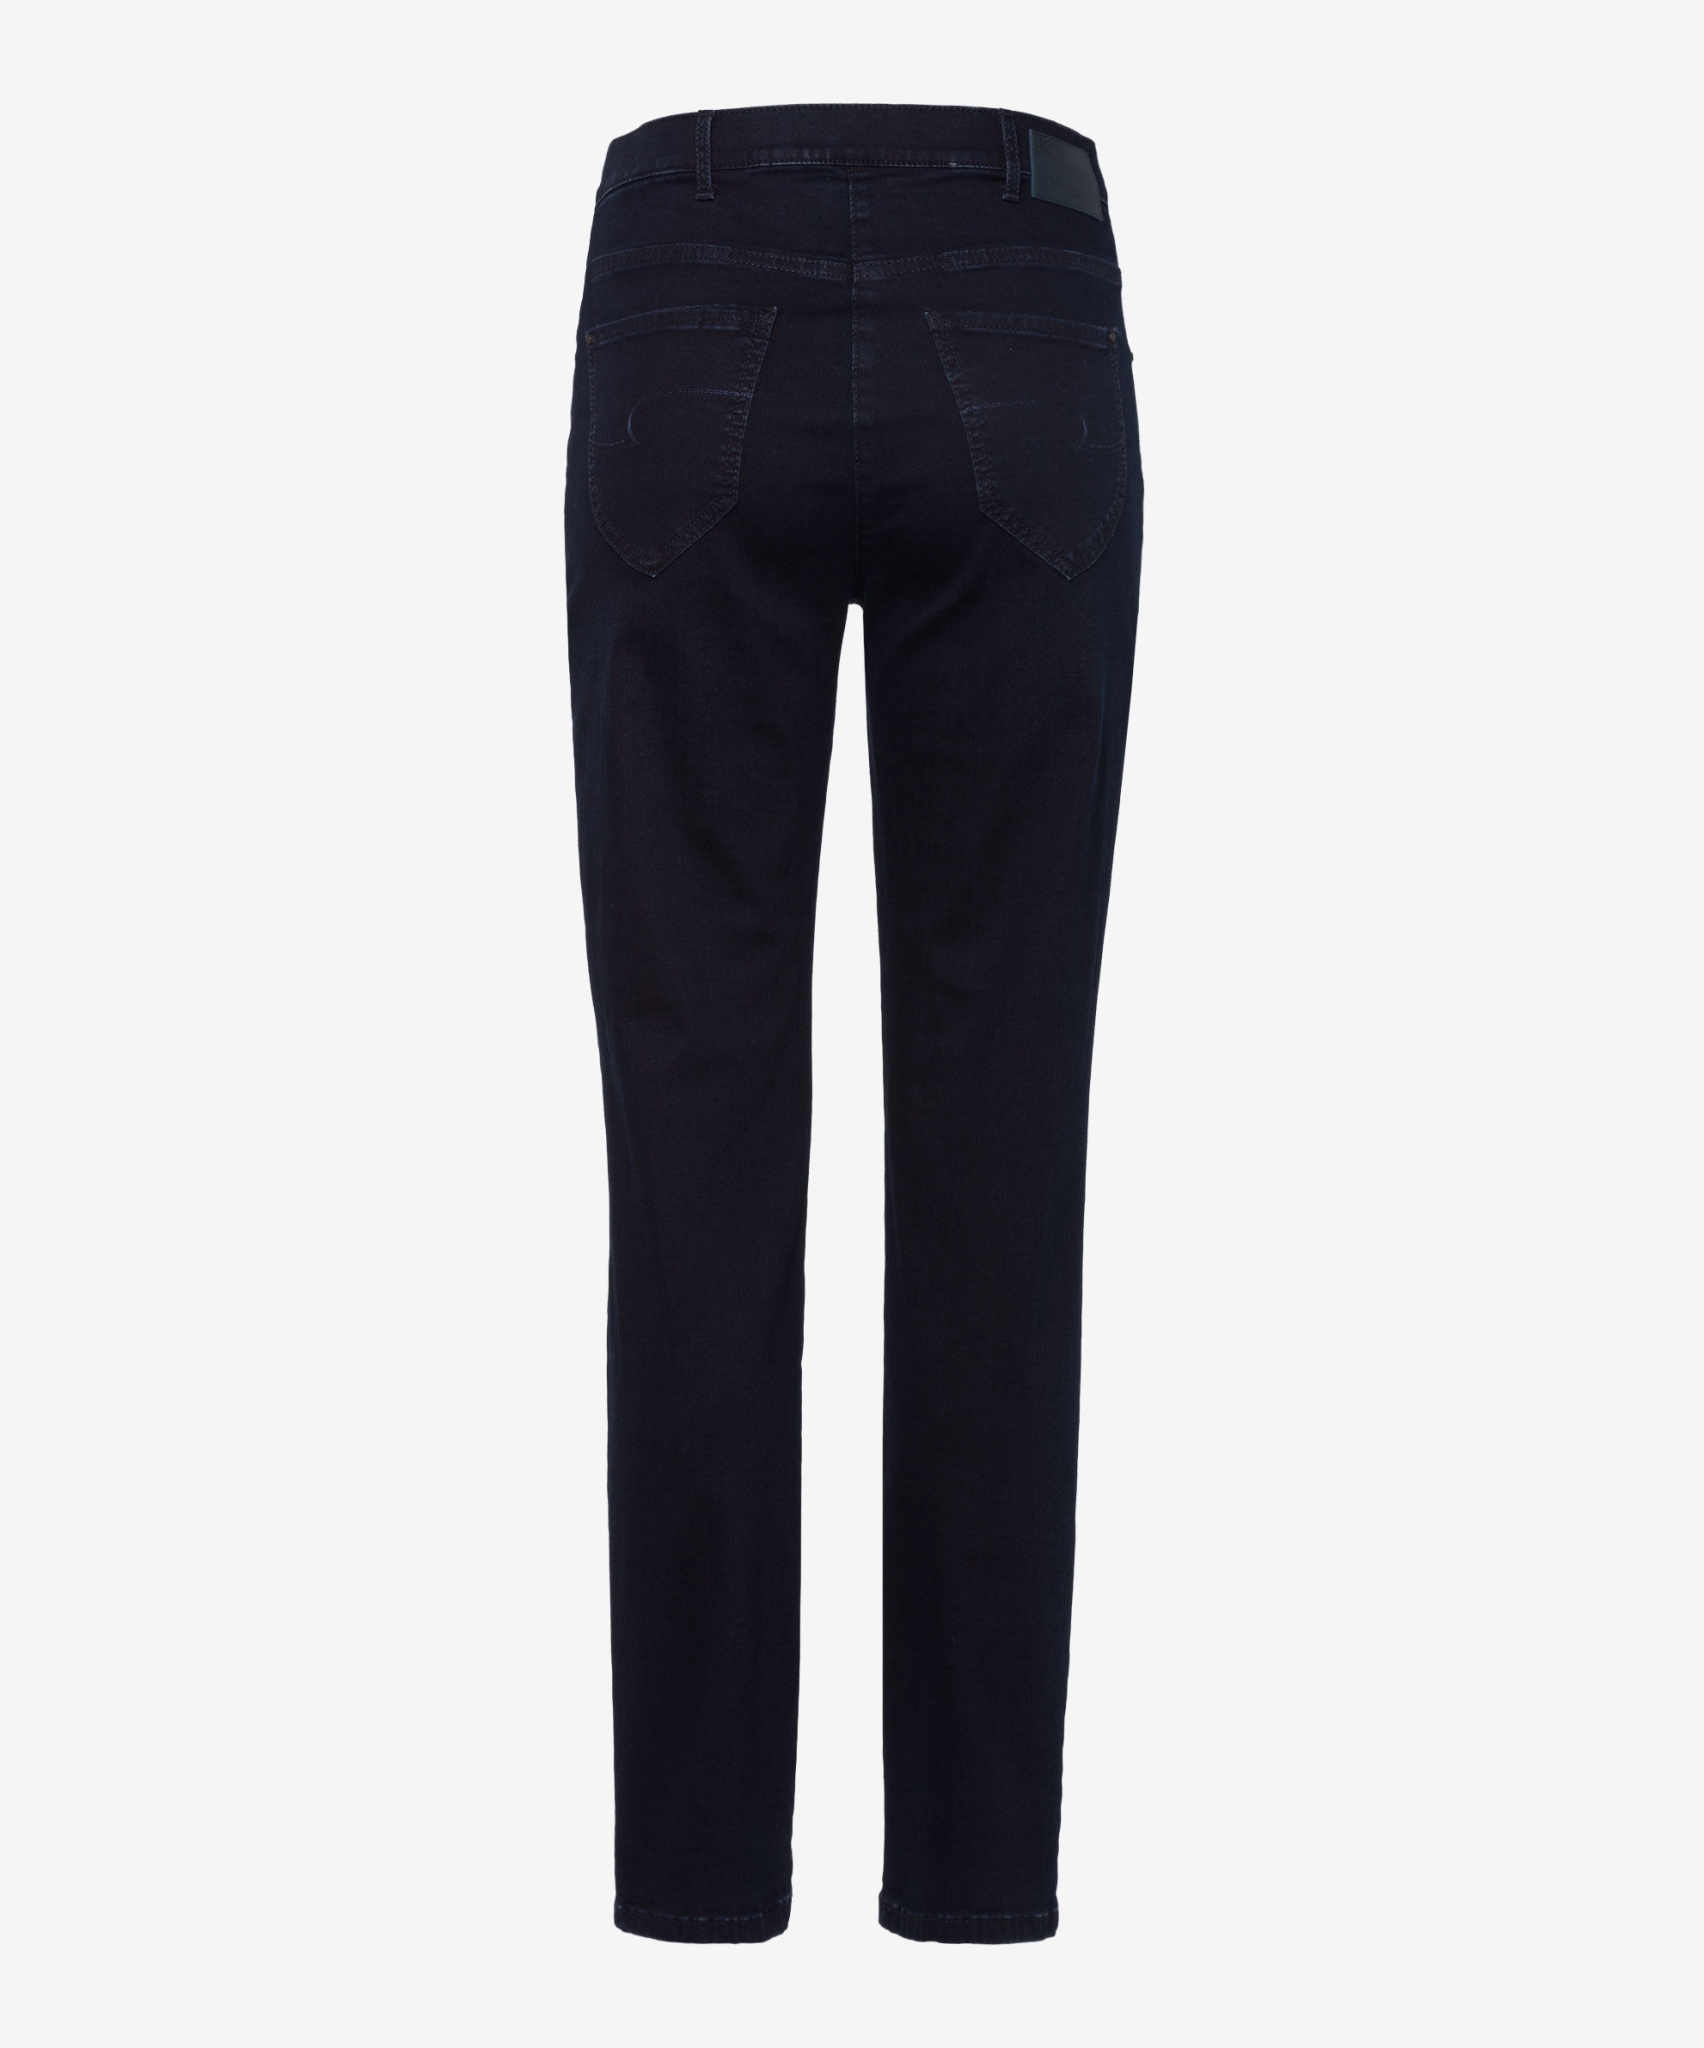 RAPHAELA BY BRAX Jeans in hochelastischer Dynamic-Qualität 10626977